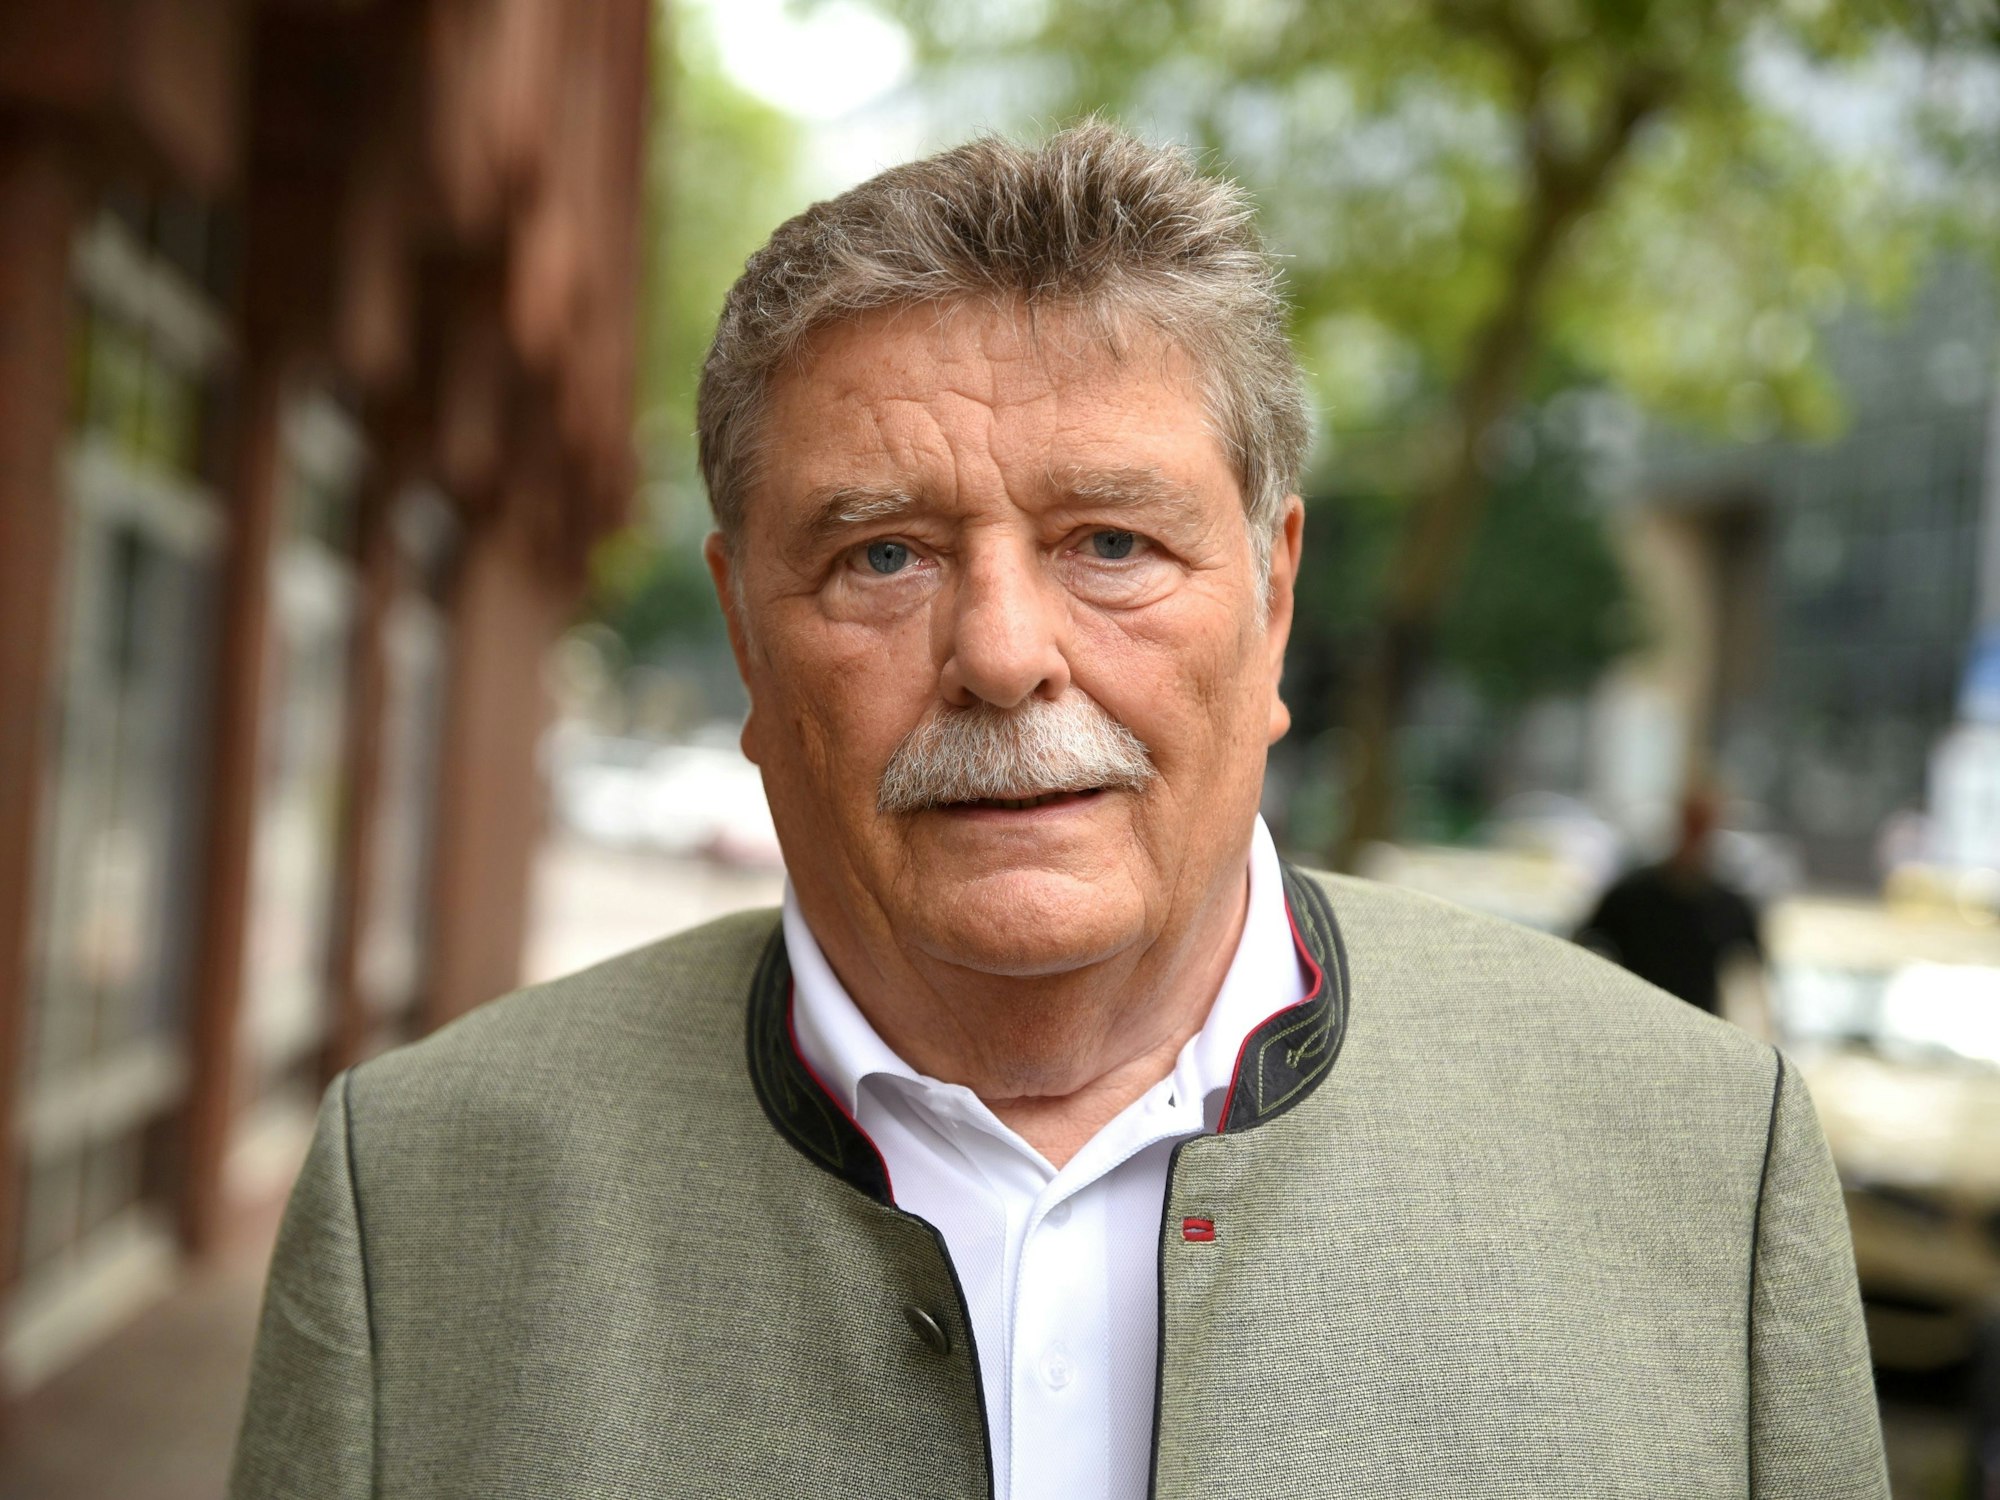 Ehemaliger Oberbürgermeister Fritz Schramma